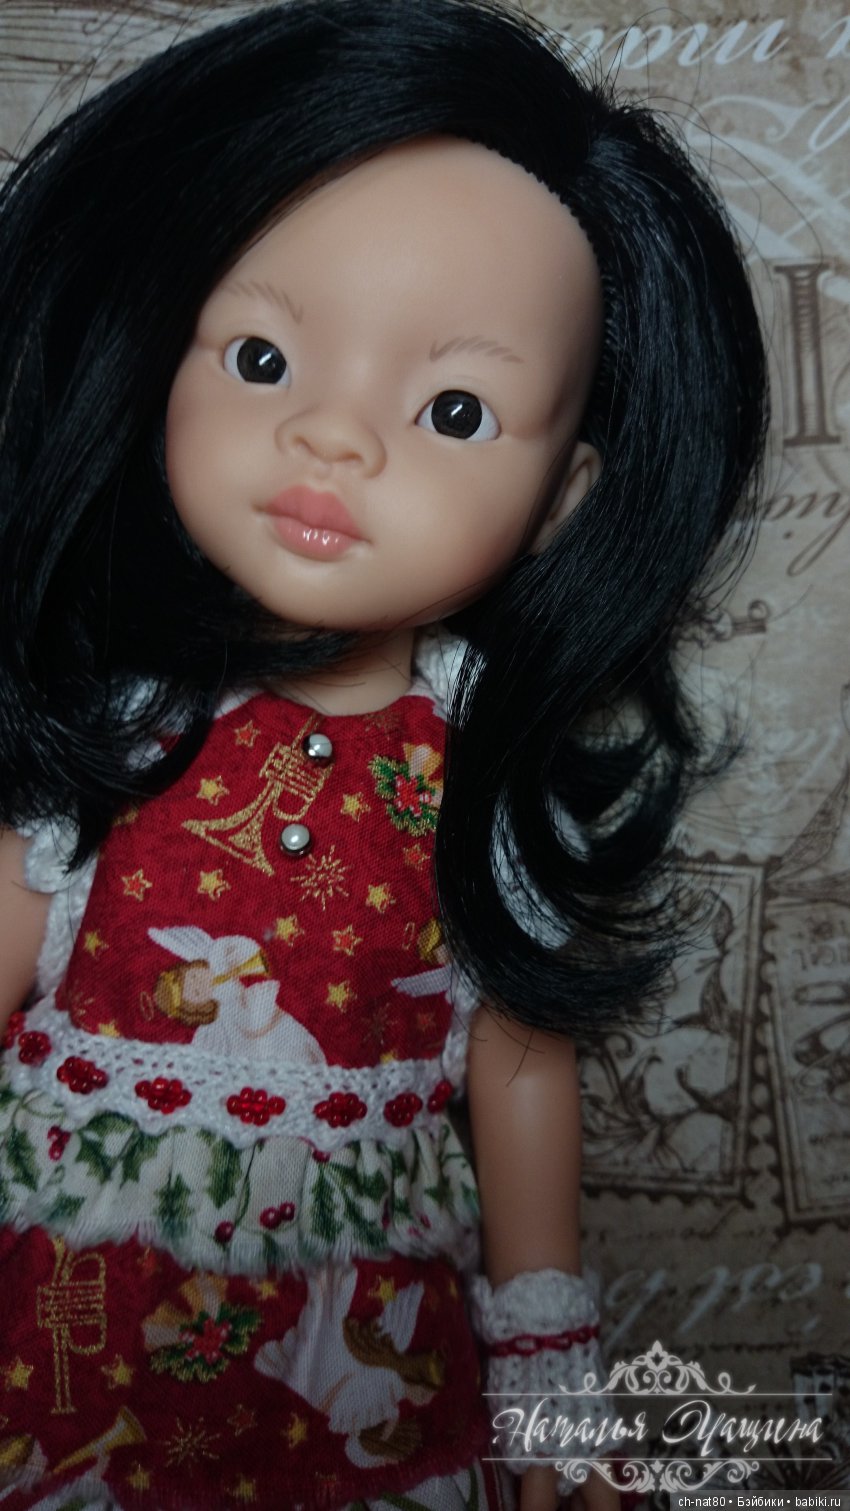 Как закрепить макияж на кукле